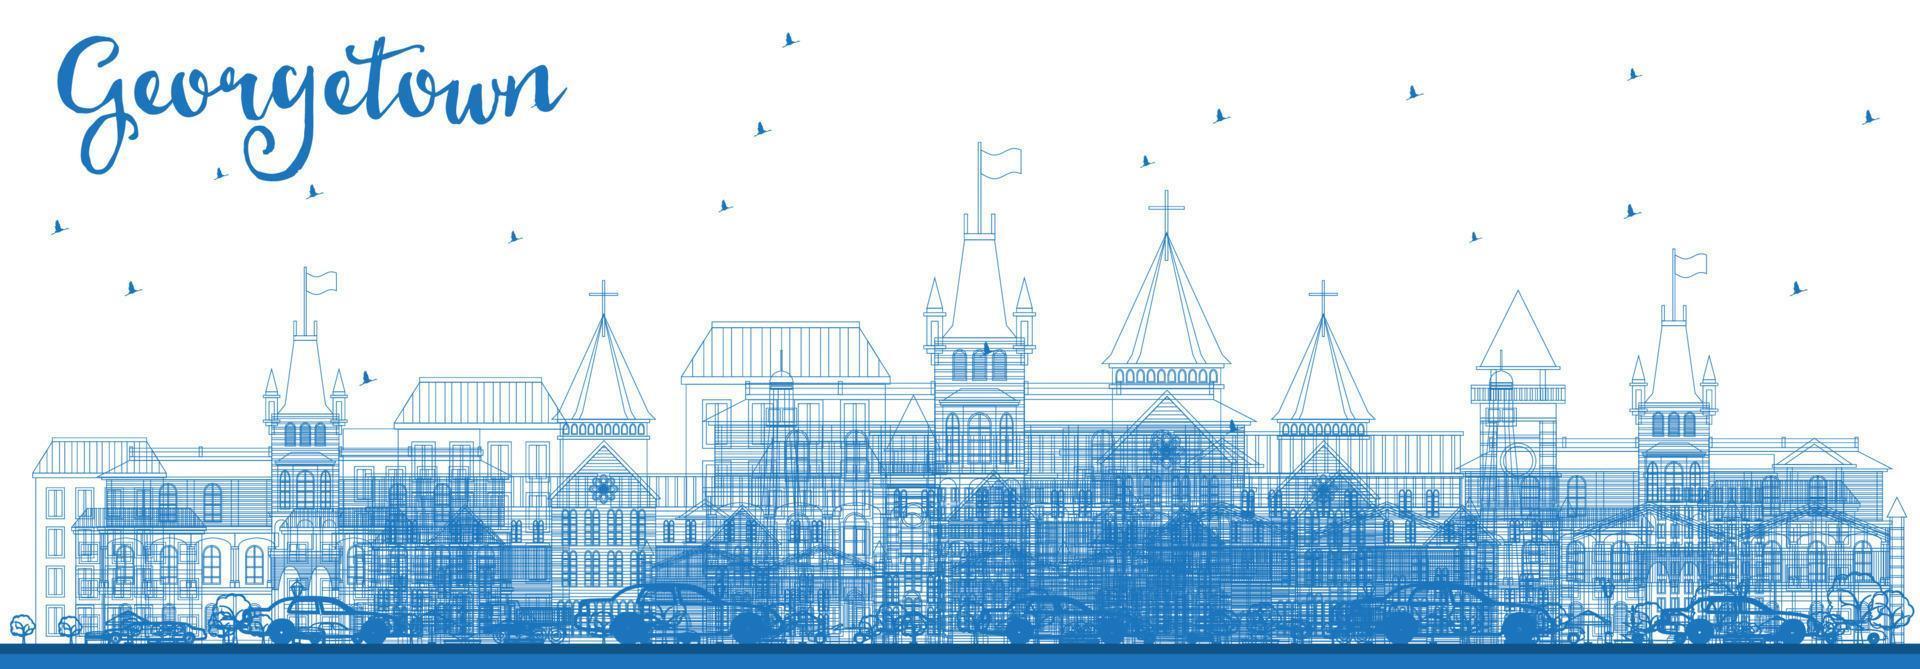 contour de l'horizon de georgetown avec des bâtiments bleus. vecteur